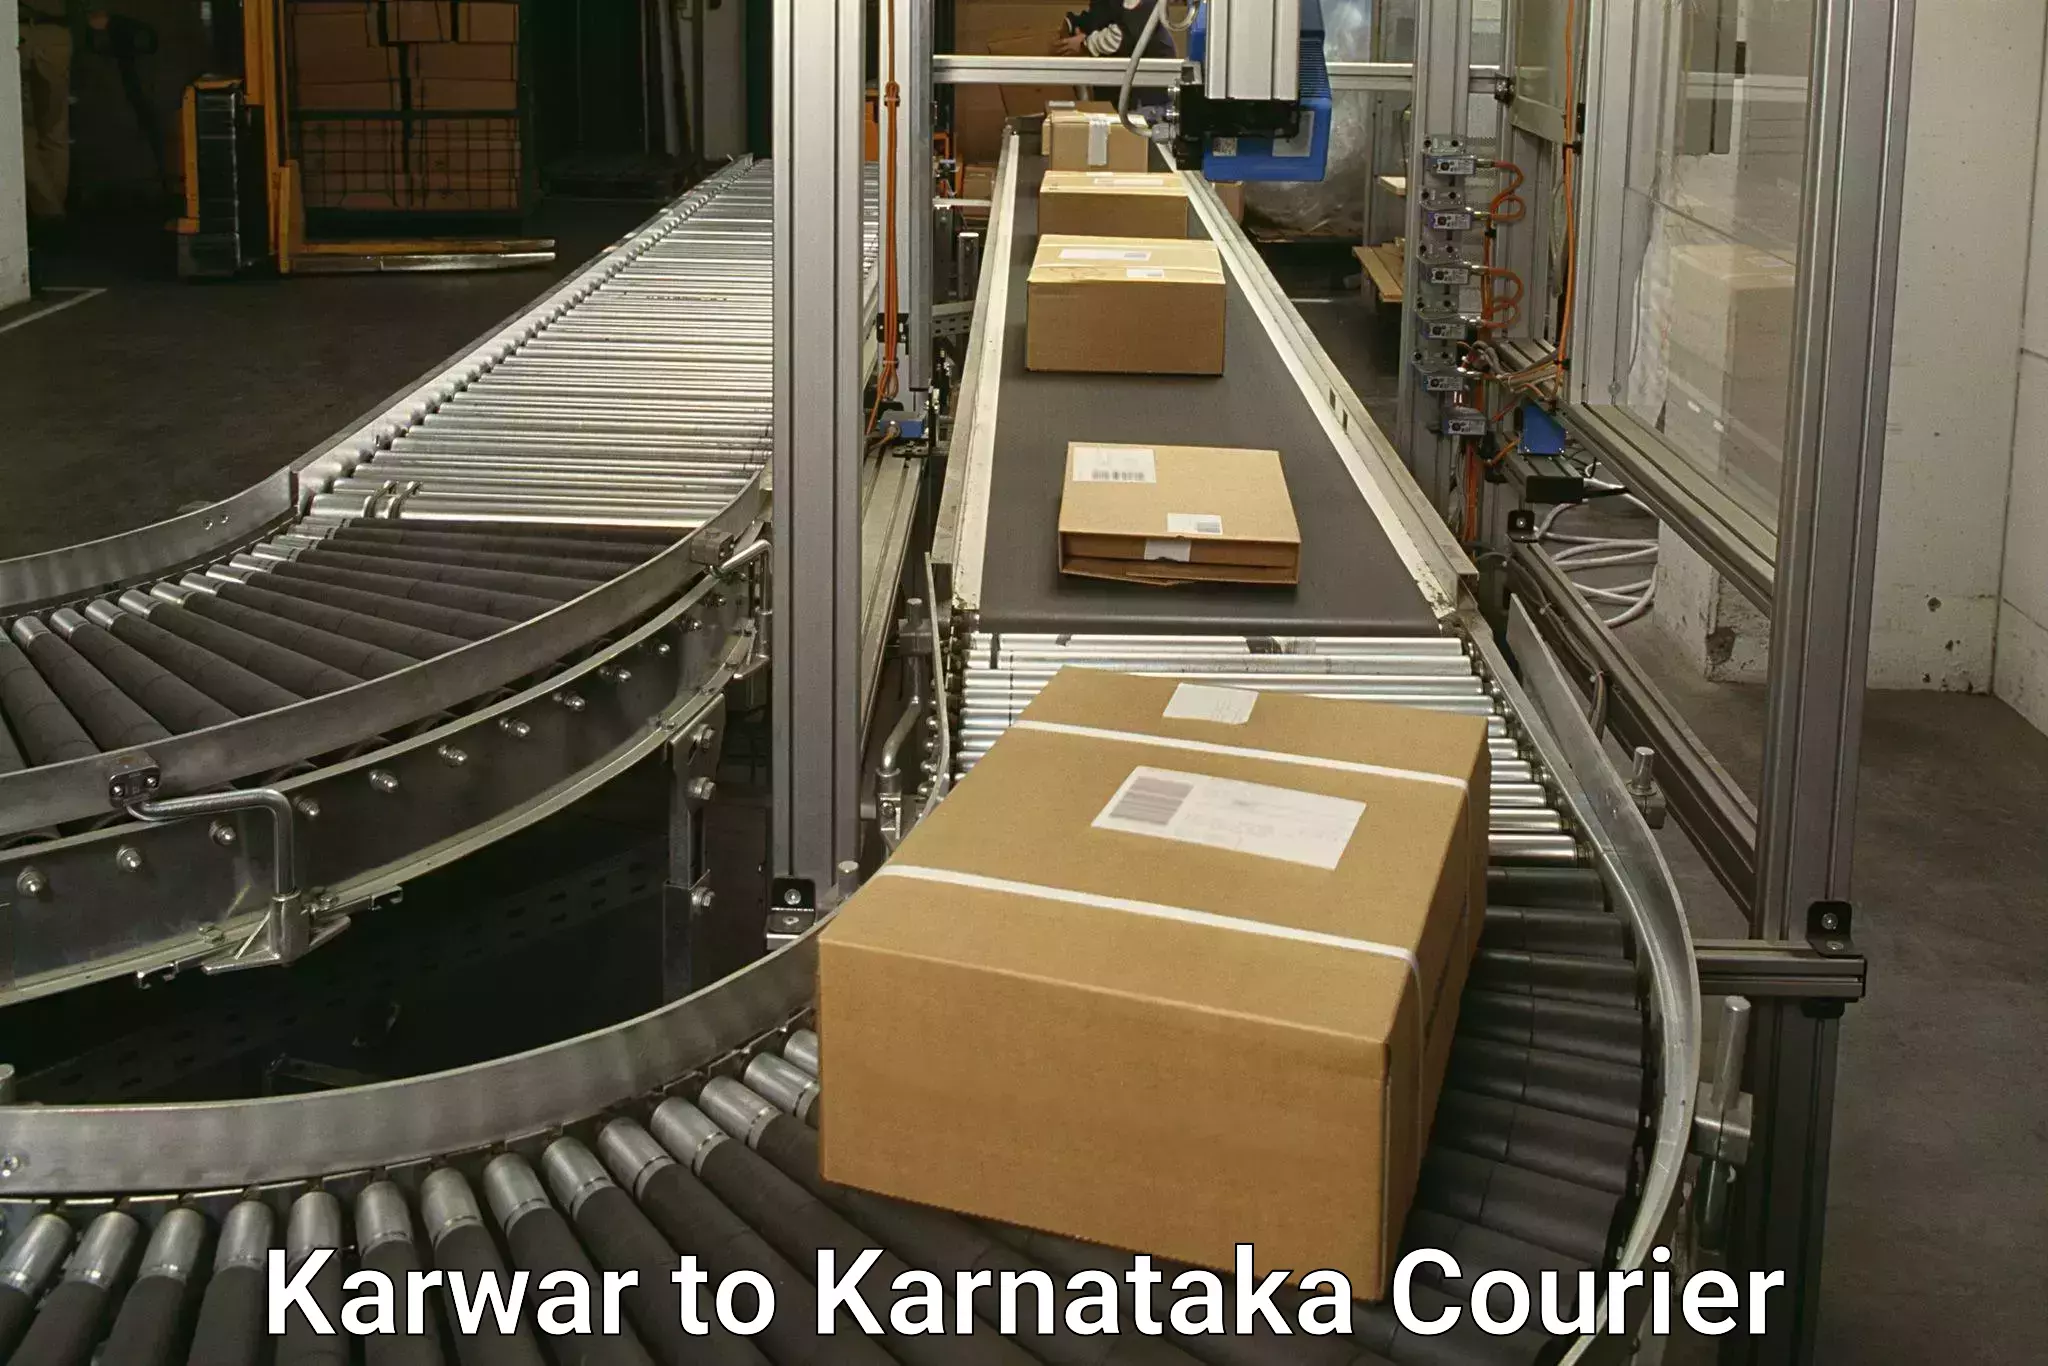 Enhanced tracking features Karwar to Karnataka